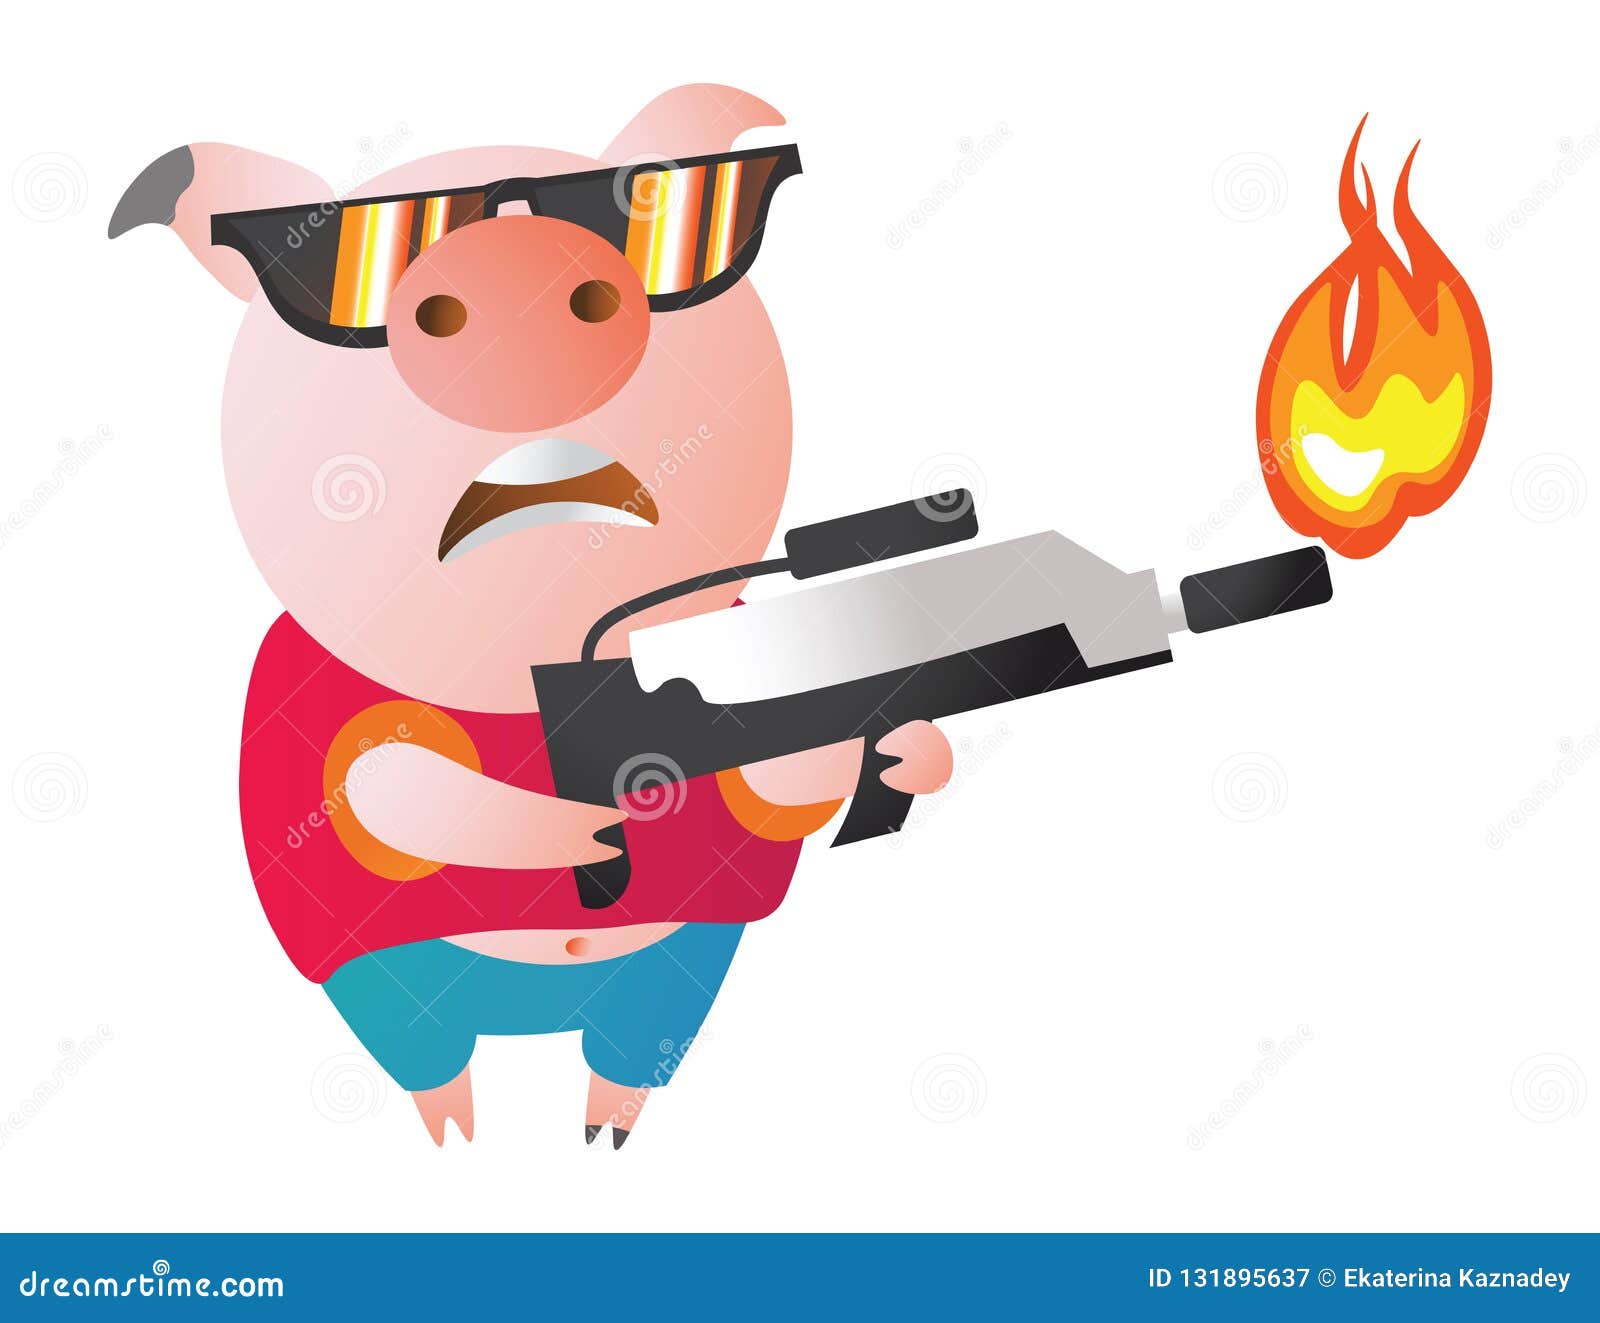 2019猪年新年红红火火手绘卡通吉祥猪猪模板免费下载_psd格式_650像素_编号33322027-千图网